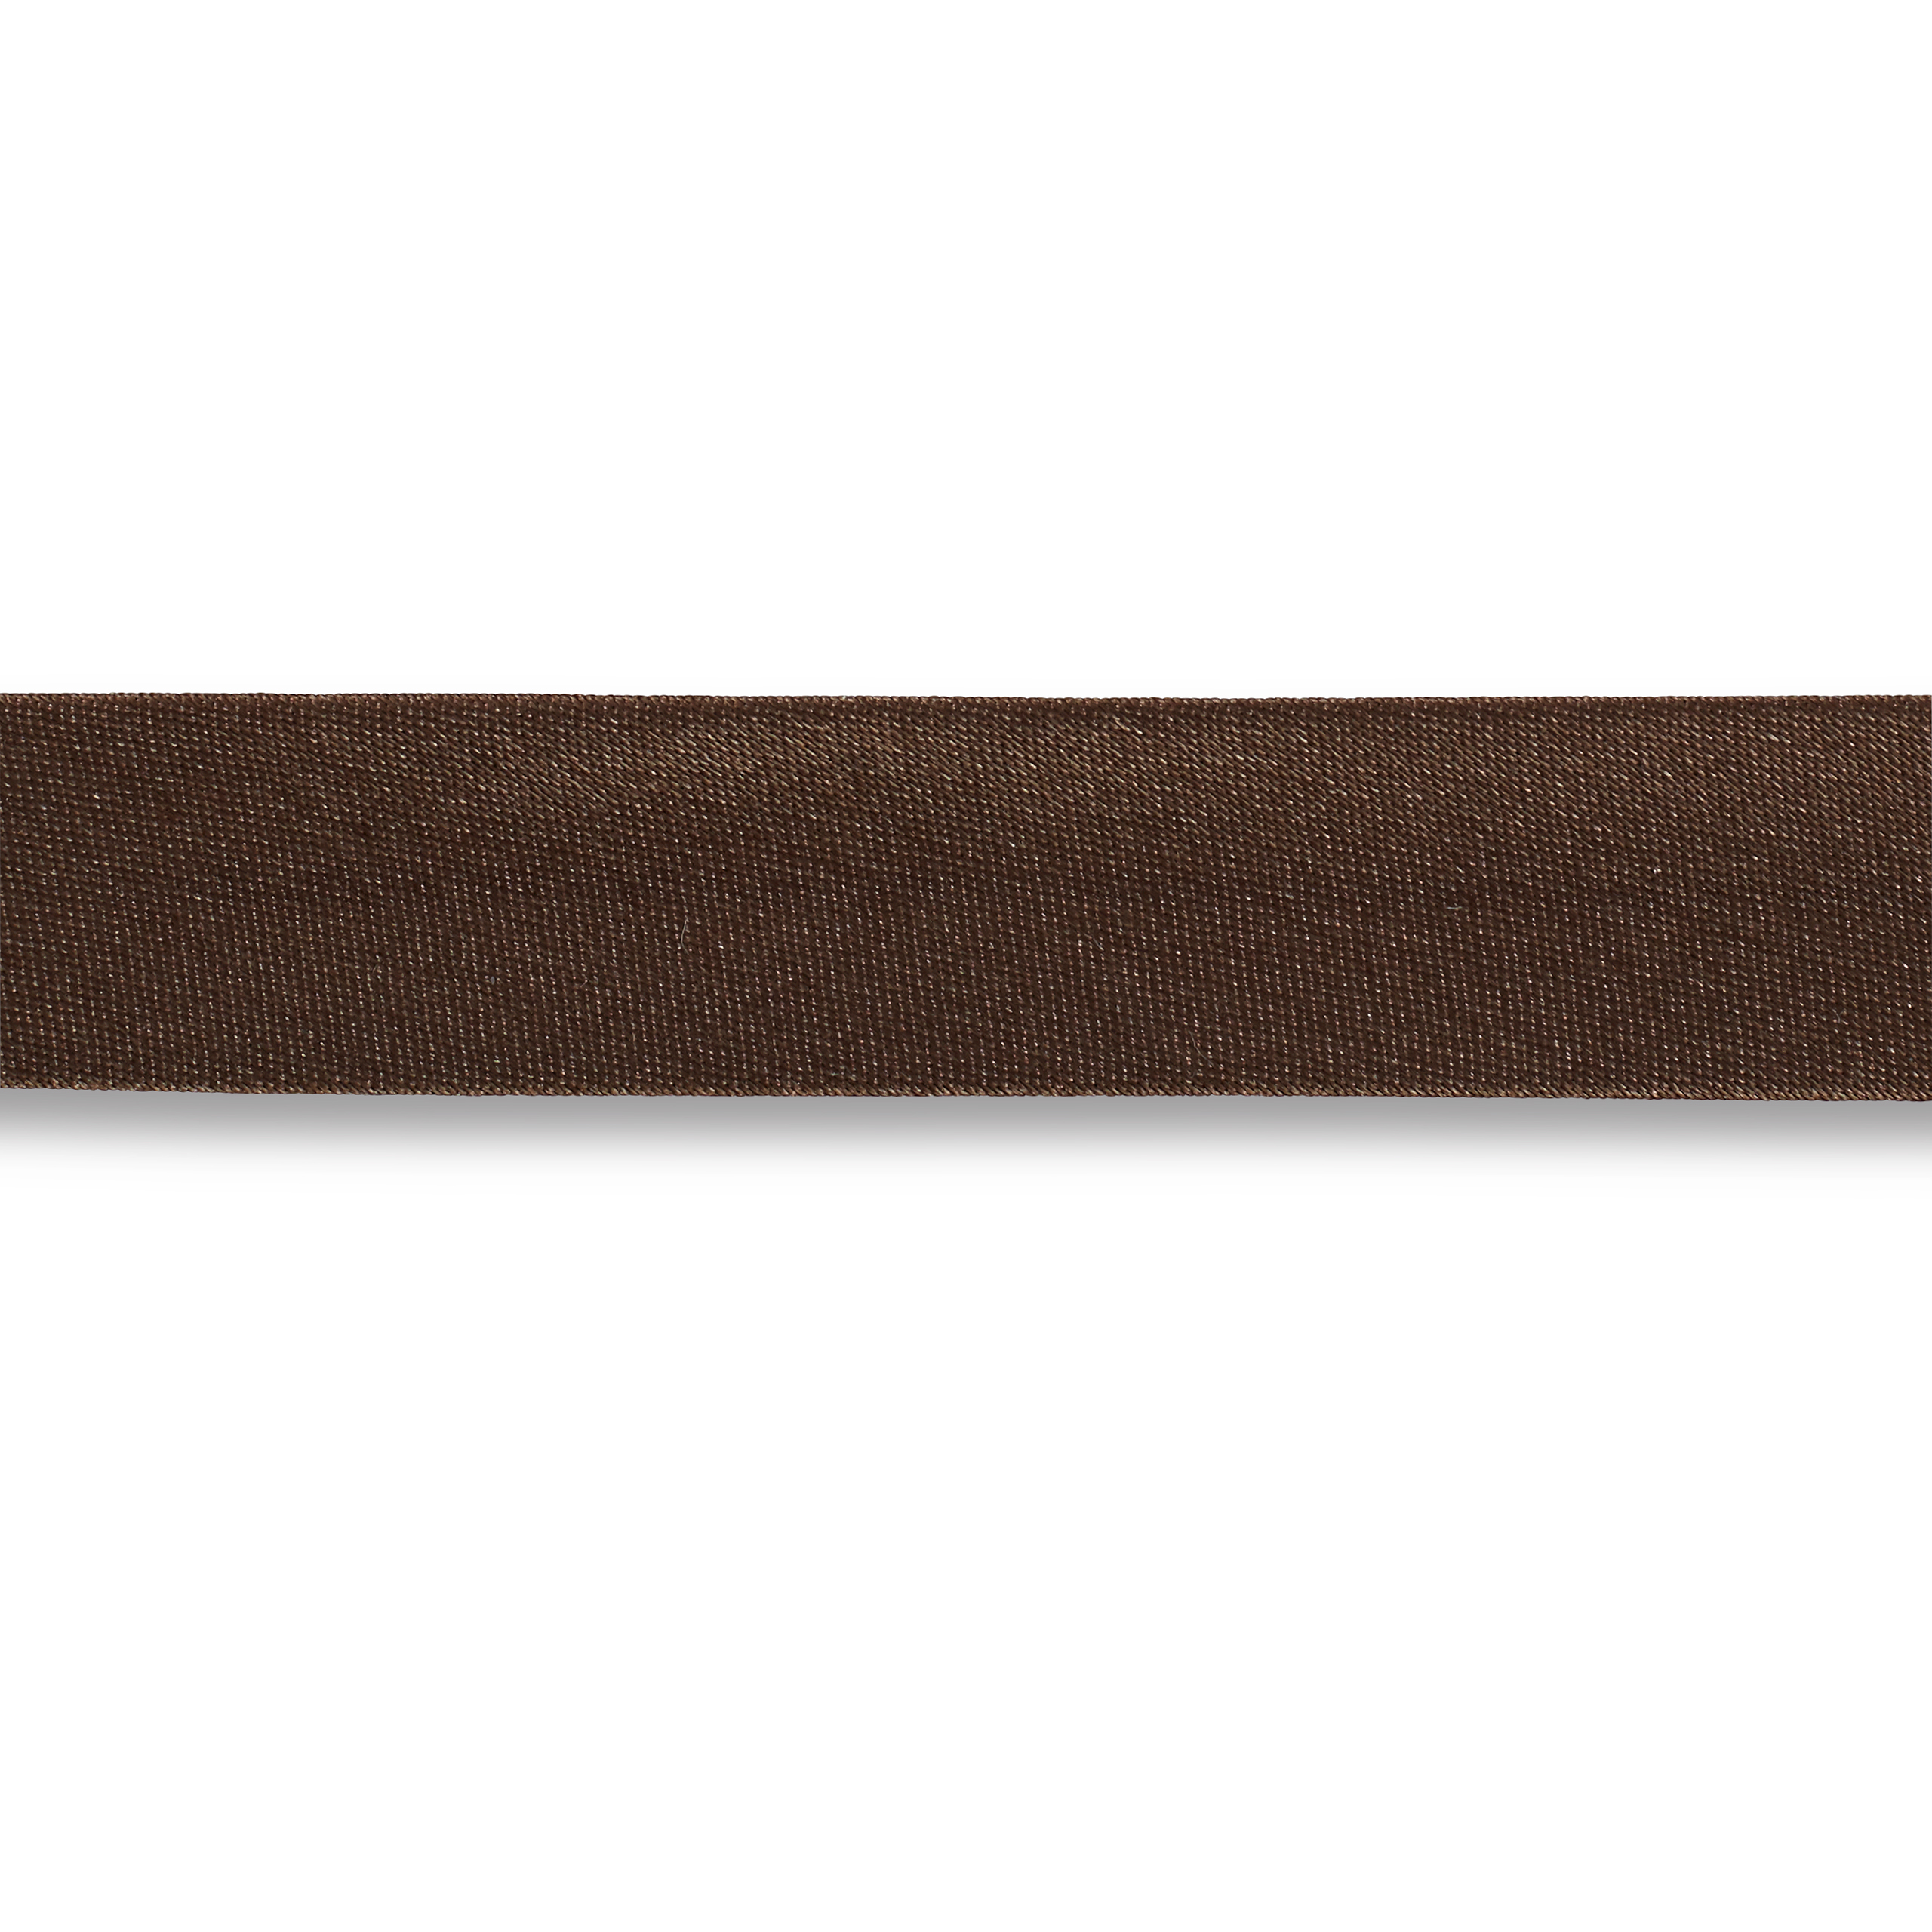 Schrägband Duchesse 40/20 mm dunkelbraun, Meterware, Einfassband, Satin-Schrägband 